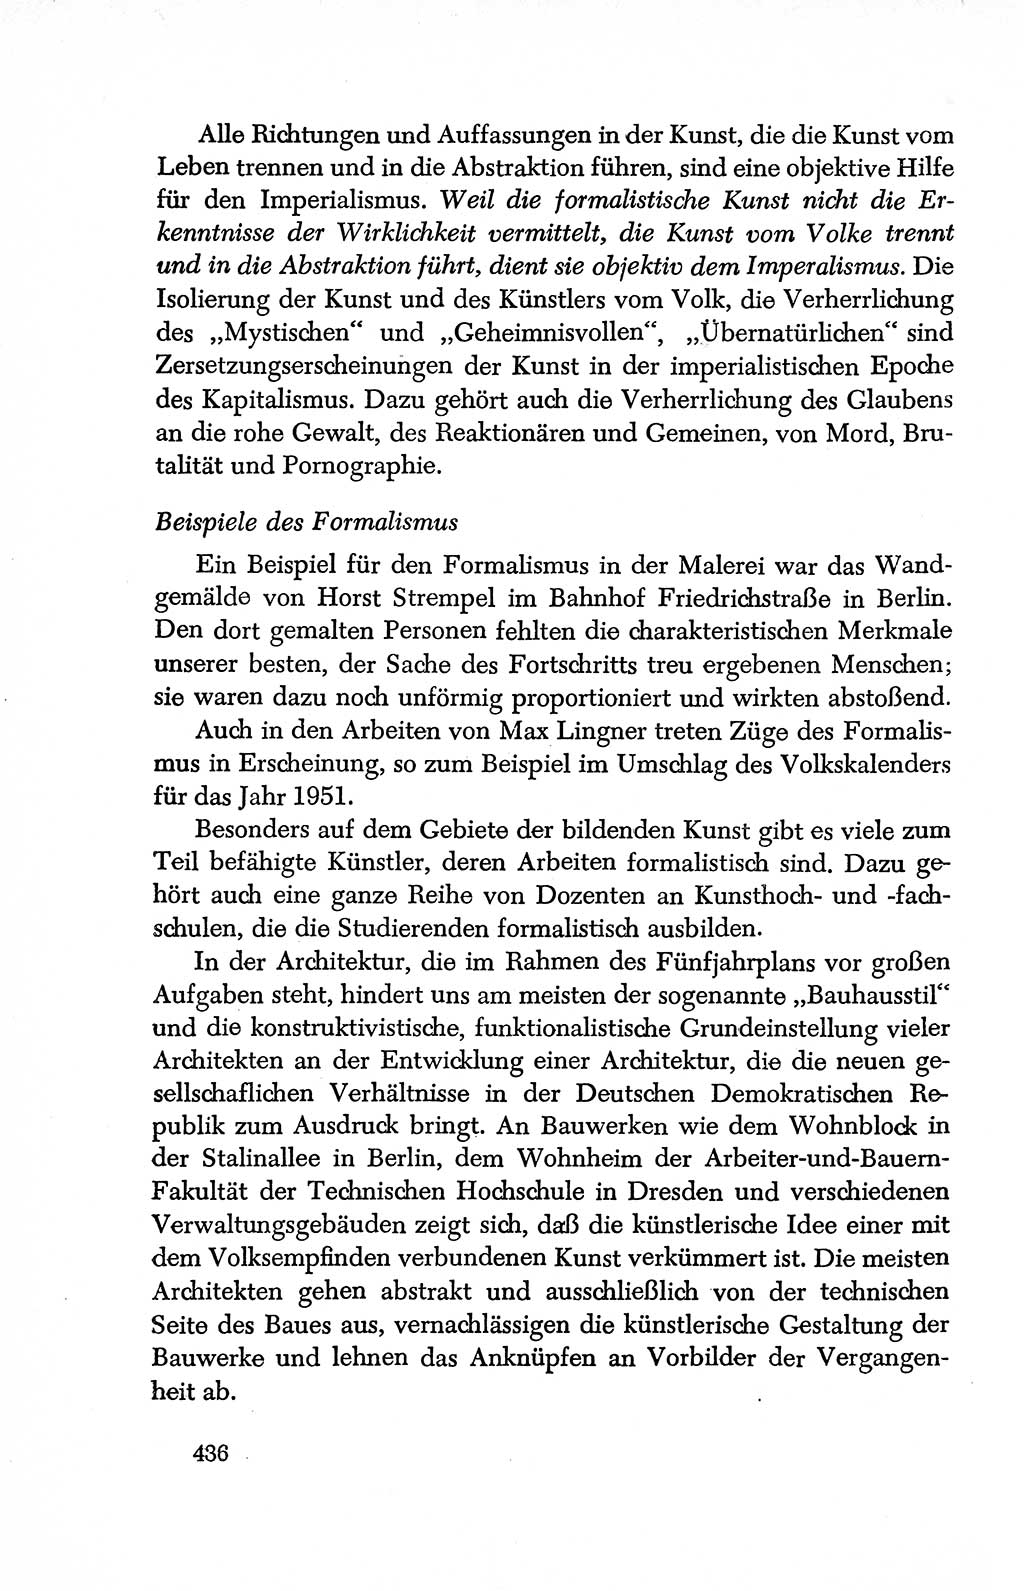 Dokumente der Sozialistischen Einheitspartei Deutschlands (SED) [Deutsche Demokratische Republik (DDR)] 1950-1952, Seite 436 (Dok. SED DDR 1950-1952, S. 436)